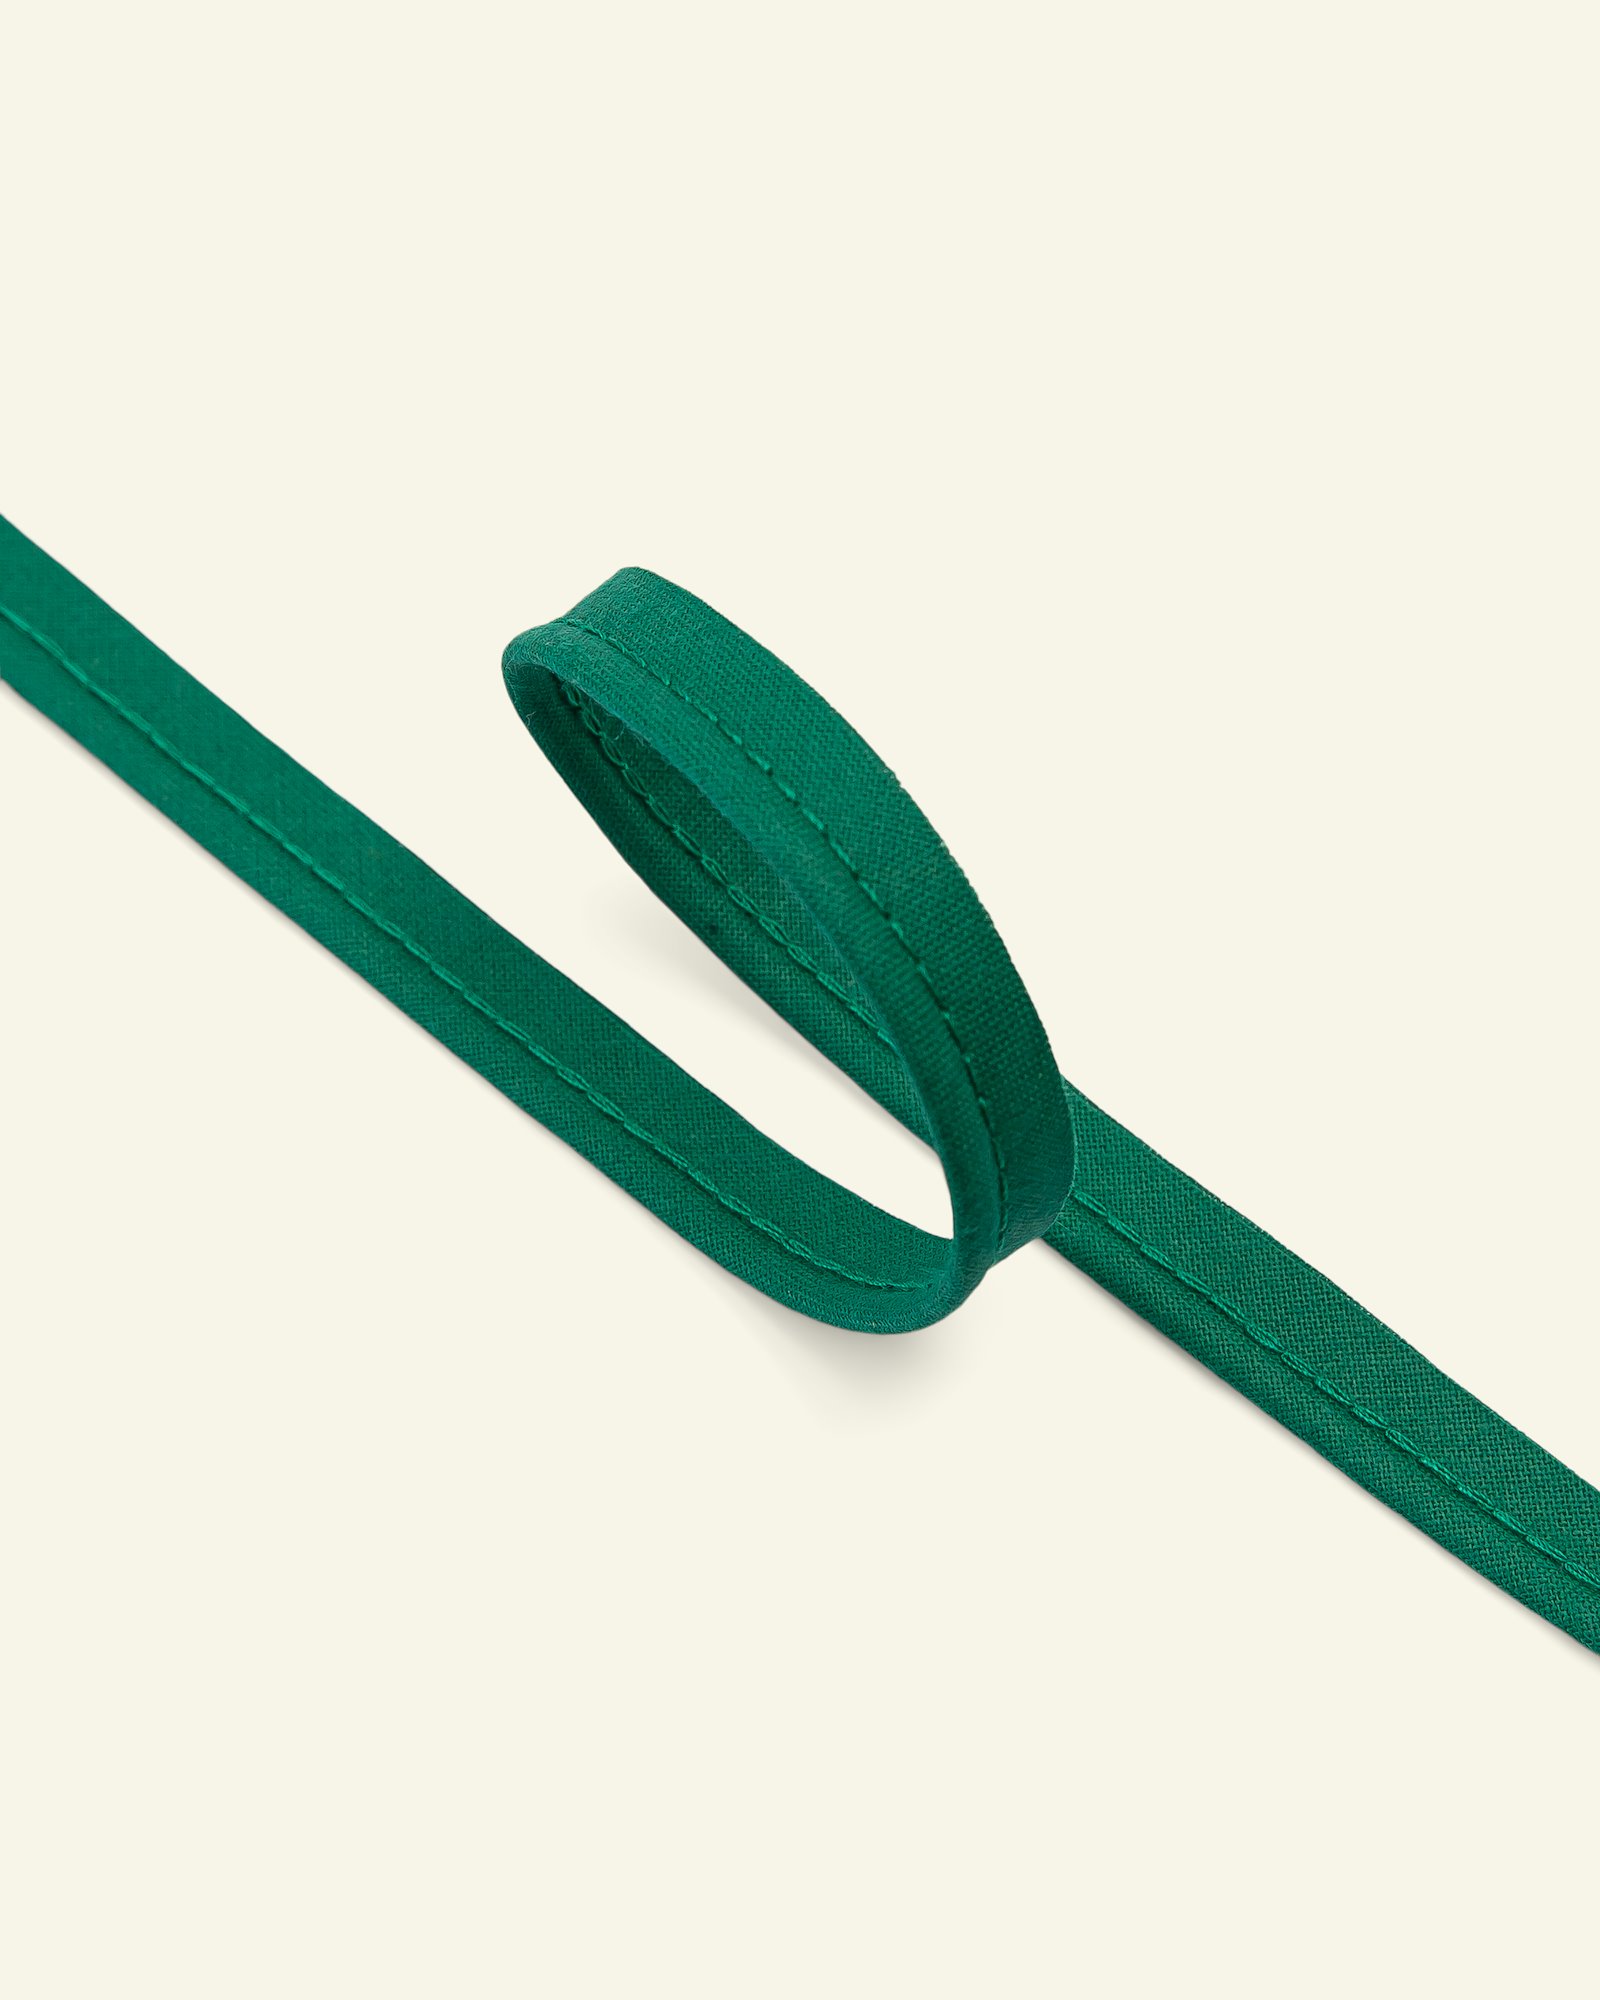 Pipingbånd bomuld 4mm grøn 5m 71087_pack